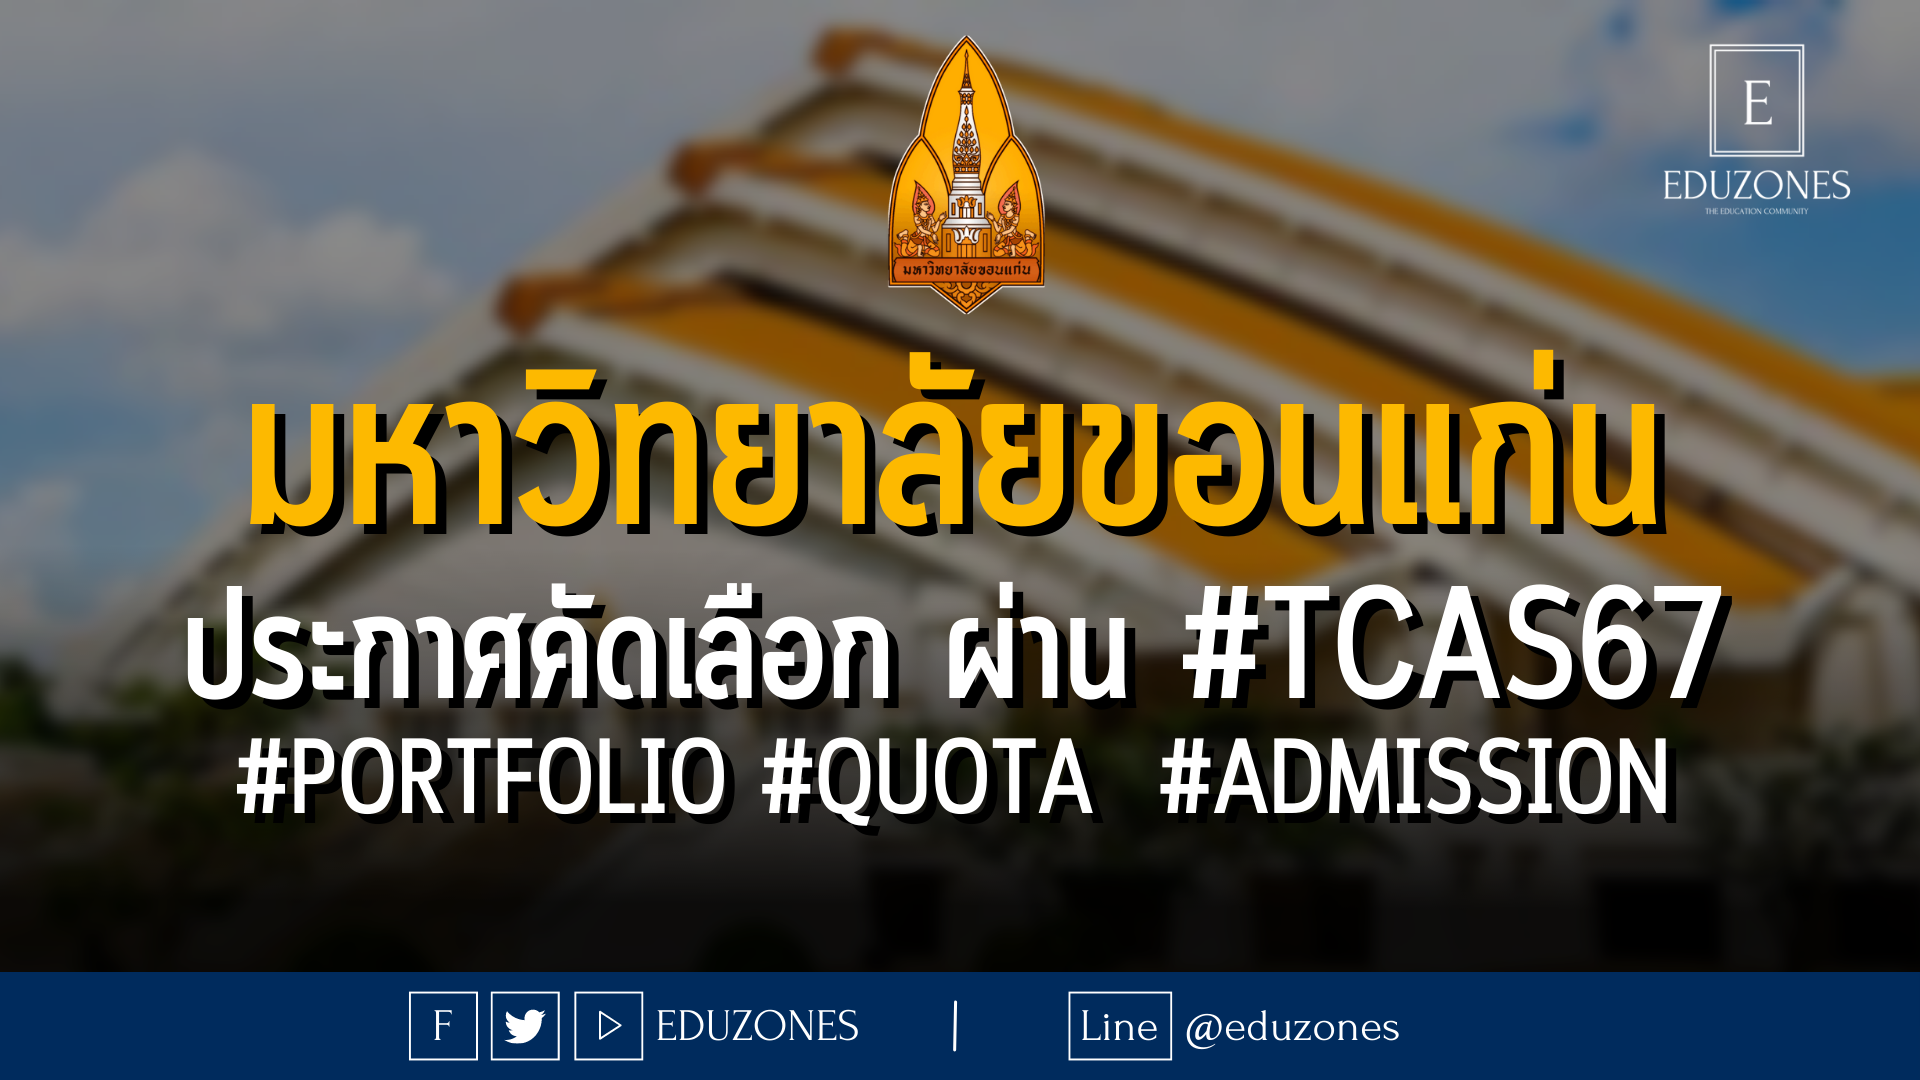 มหาวิทยาลัยขอนแก่น ประกาศคัดเลือก ผ่าน #TCAS67 #PORTFOLIO #QUOTA #ADMISSION